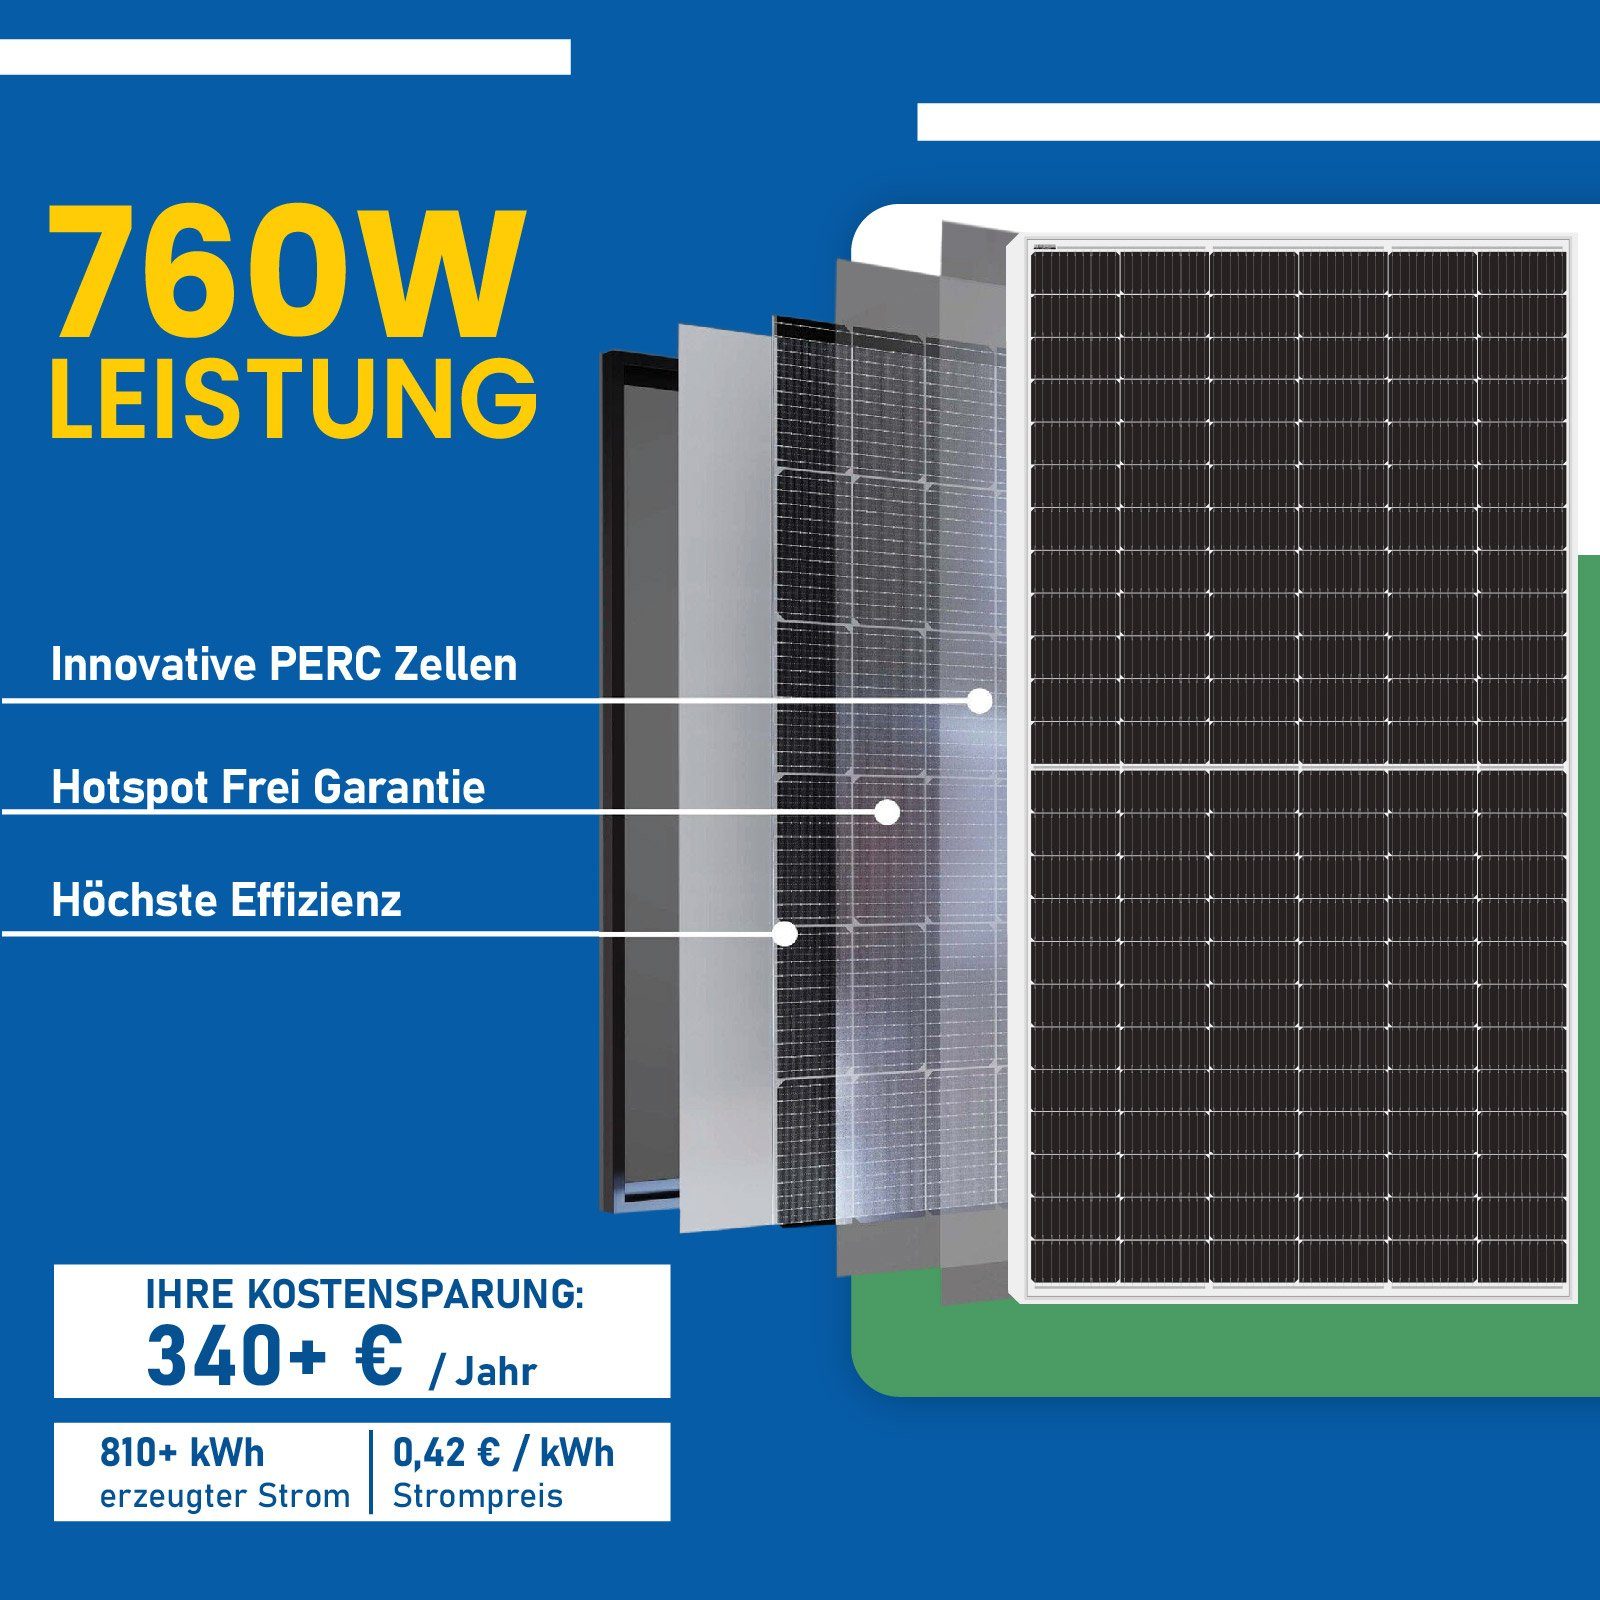 Wechselrichter mit Silber Relais), Deye Solaranlage Balkonkraftwerk Komplettset Generation (Neu Schuckostecker 800W Solarmodule, EPP.Solar Upgradefähiger 10m WIFI 380W inkl. 760W